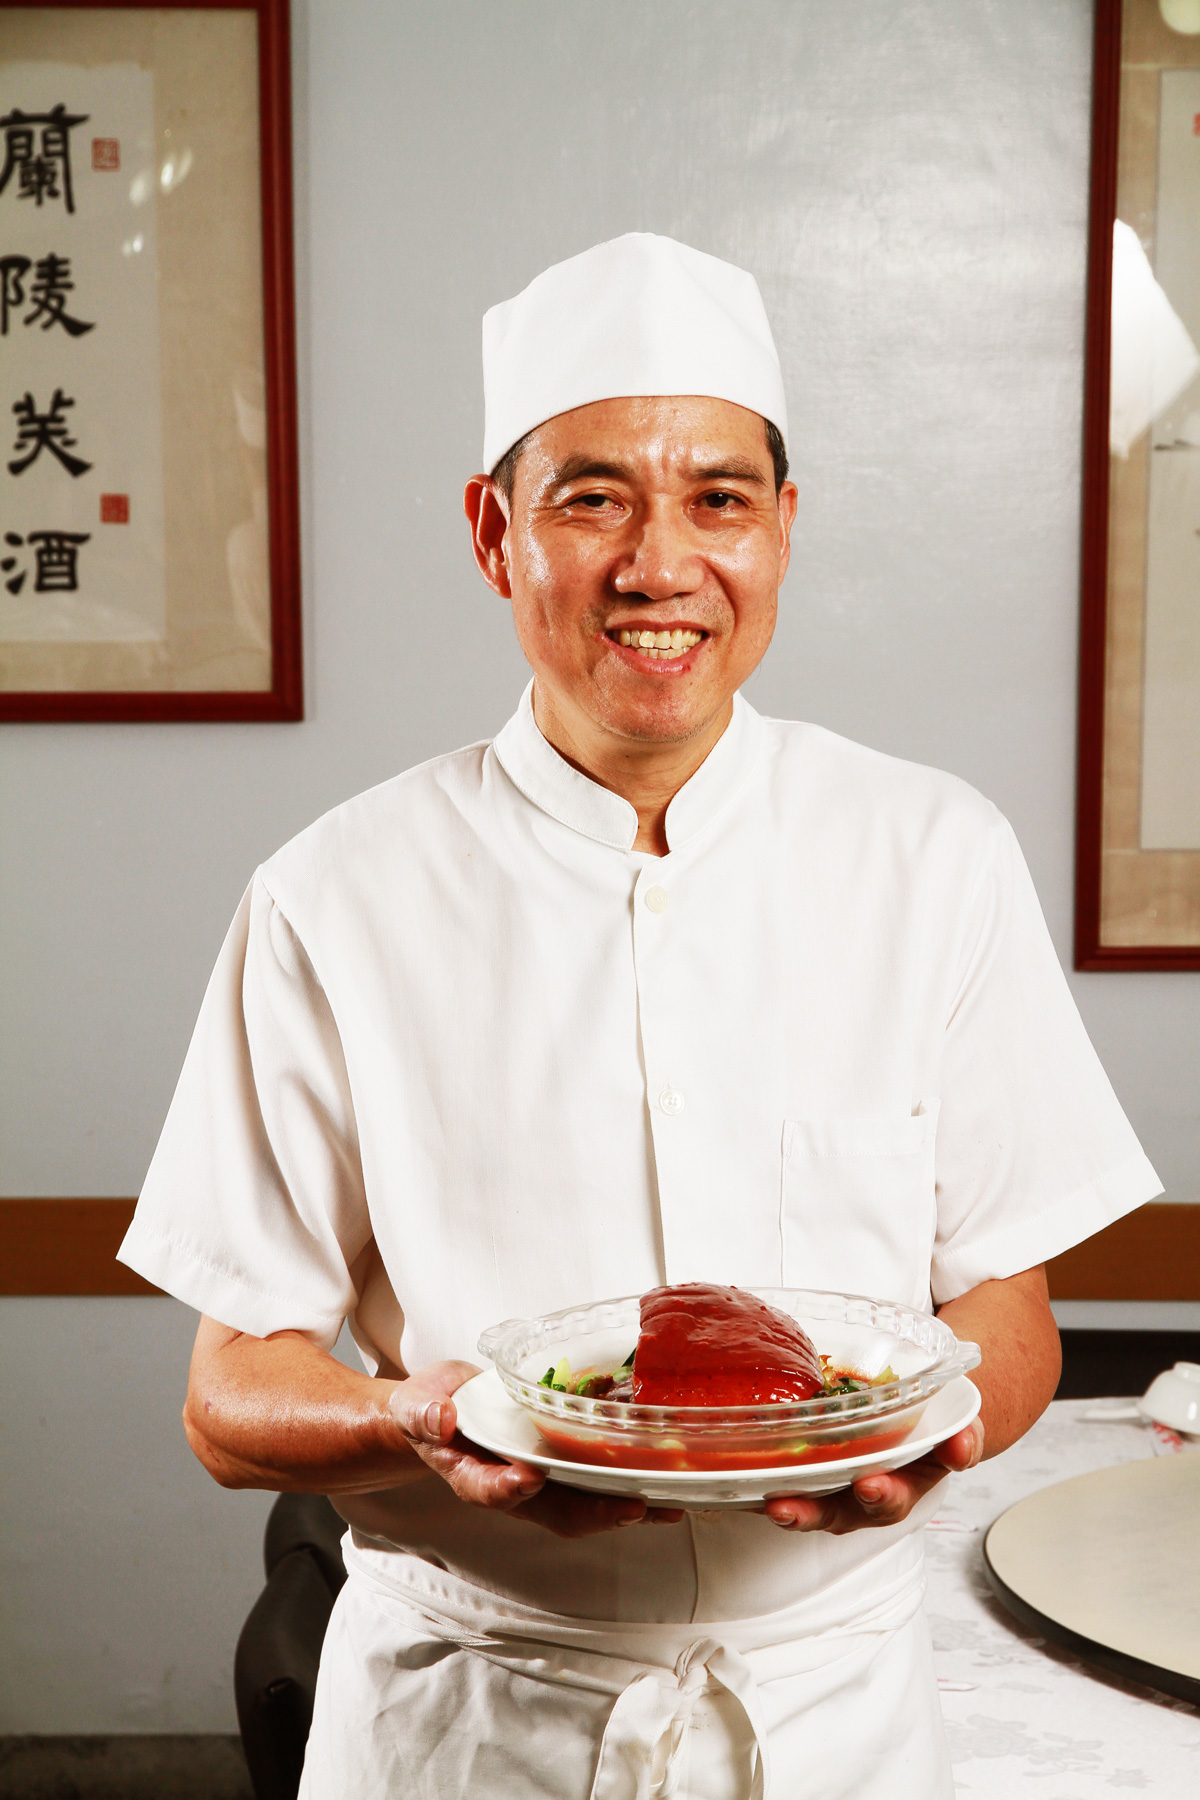 「上海小館」老闆馮兆霖廚藝了得，翁玉夫與馮兆霖師出同門，十多年來上海小館的不走味兒，由他看顧。（攝影：呂恩賜）